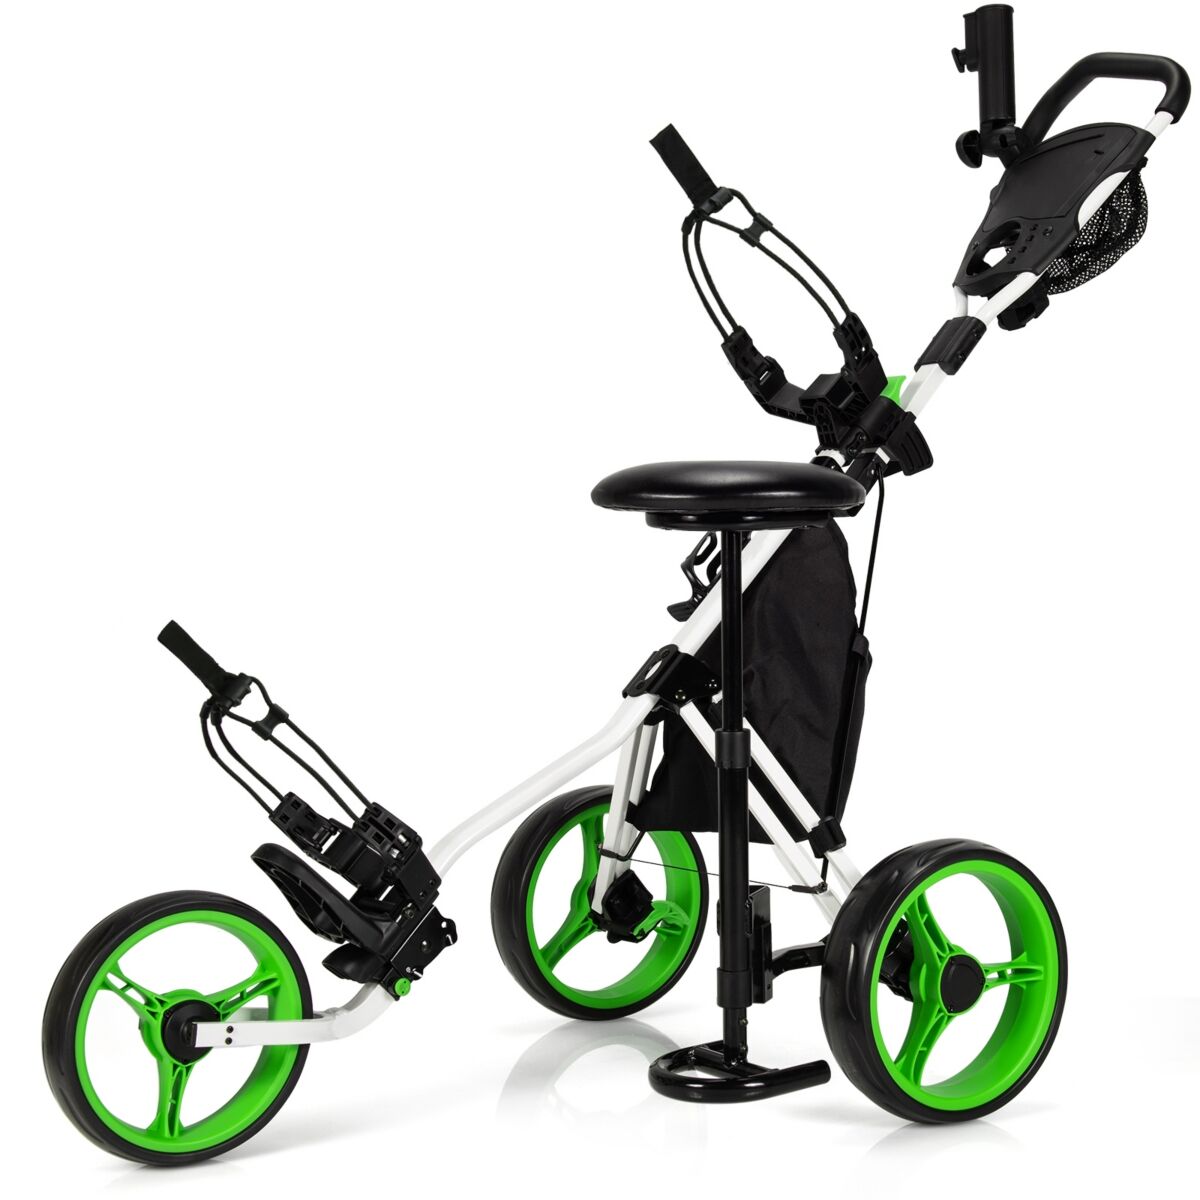 Costway Folding 3 Wheels Golf Push Cart W/Seat Scoreboard Adjustable Handle - Green